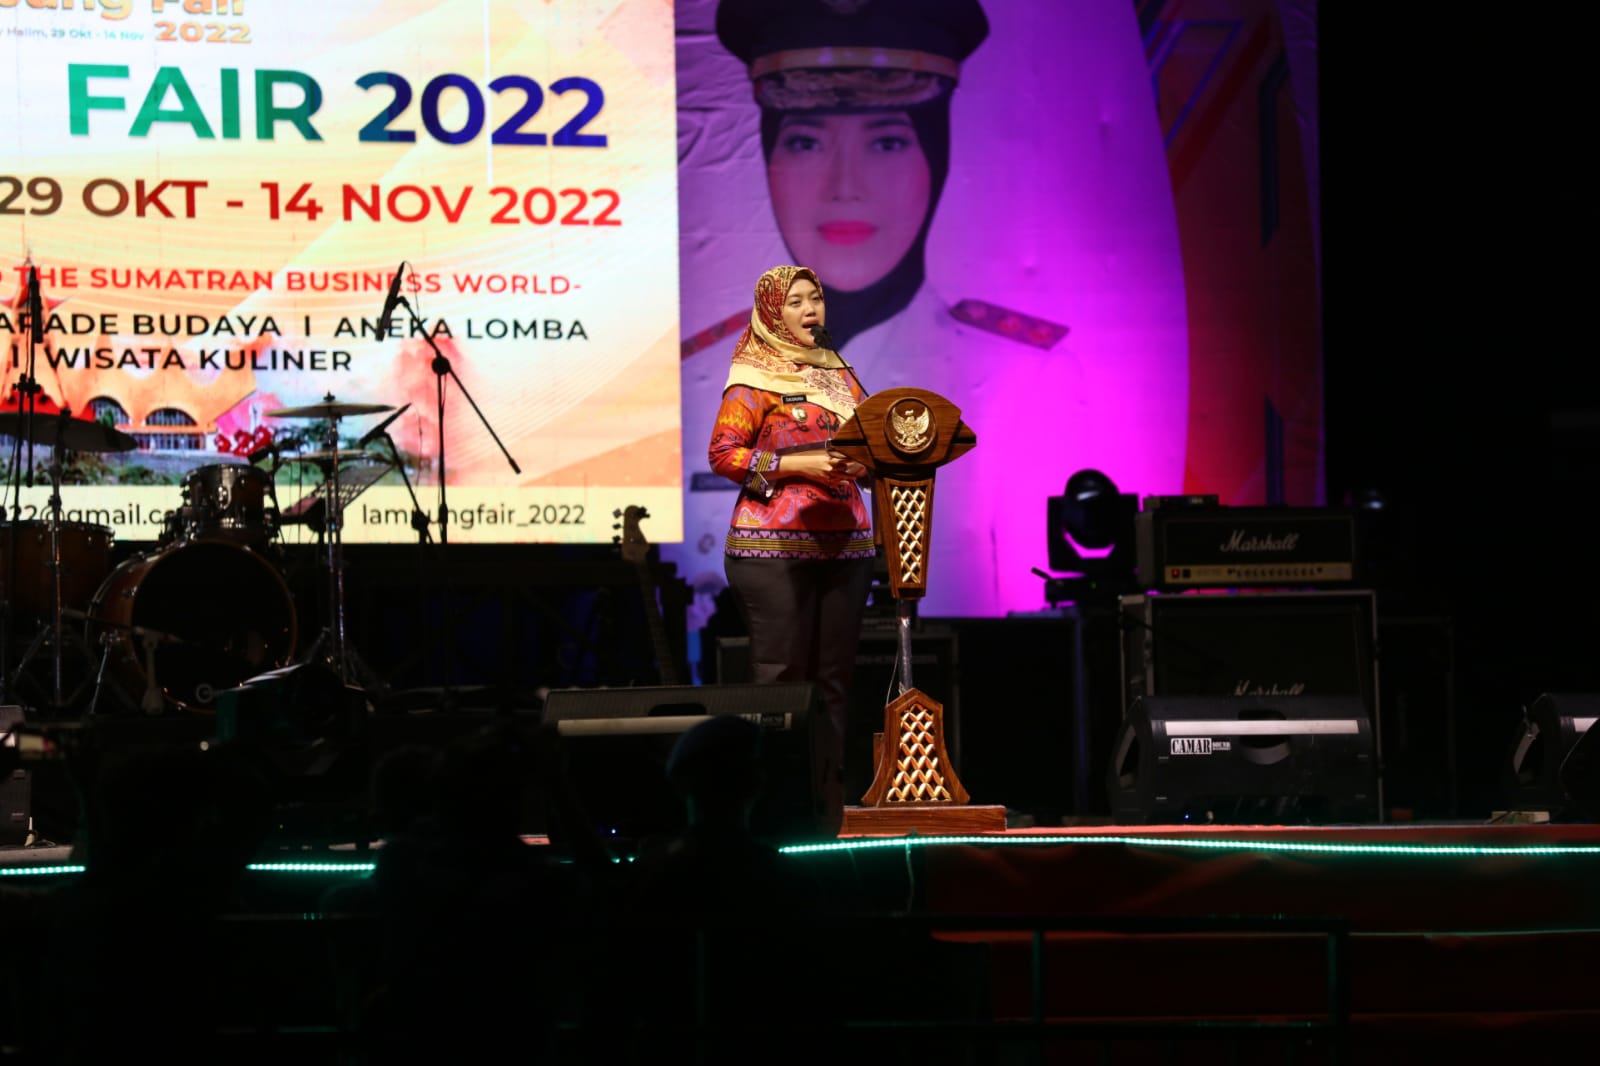 Wagub Chusnunia Tutup Perhelatan Lampung Fair 2022